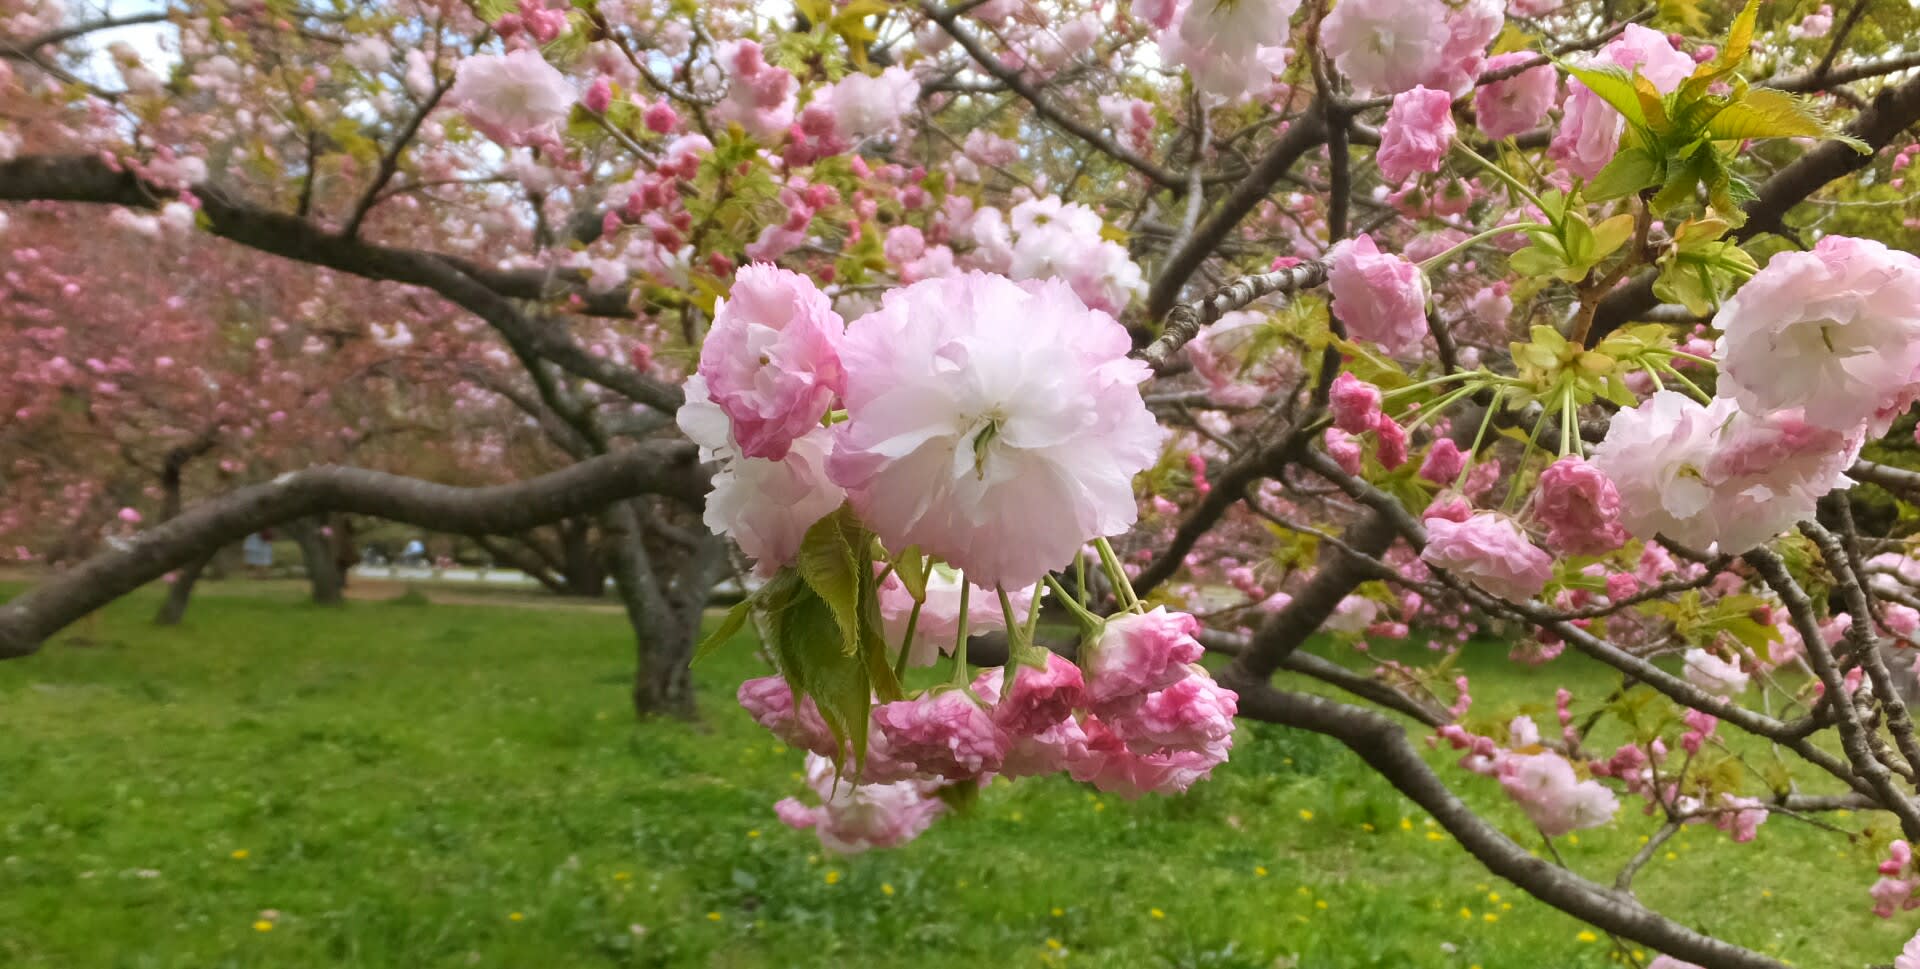 京都御苑の里桜と紅しだれ桜 京都で定年後生活